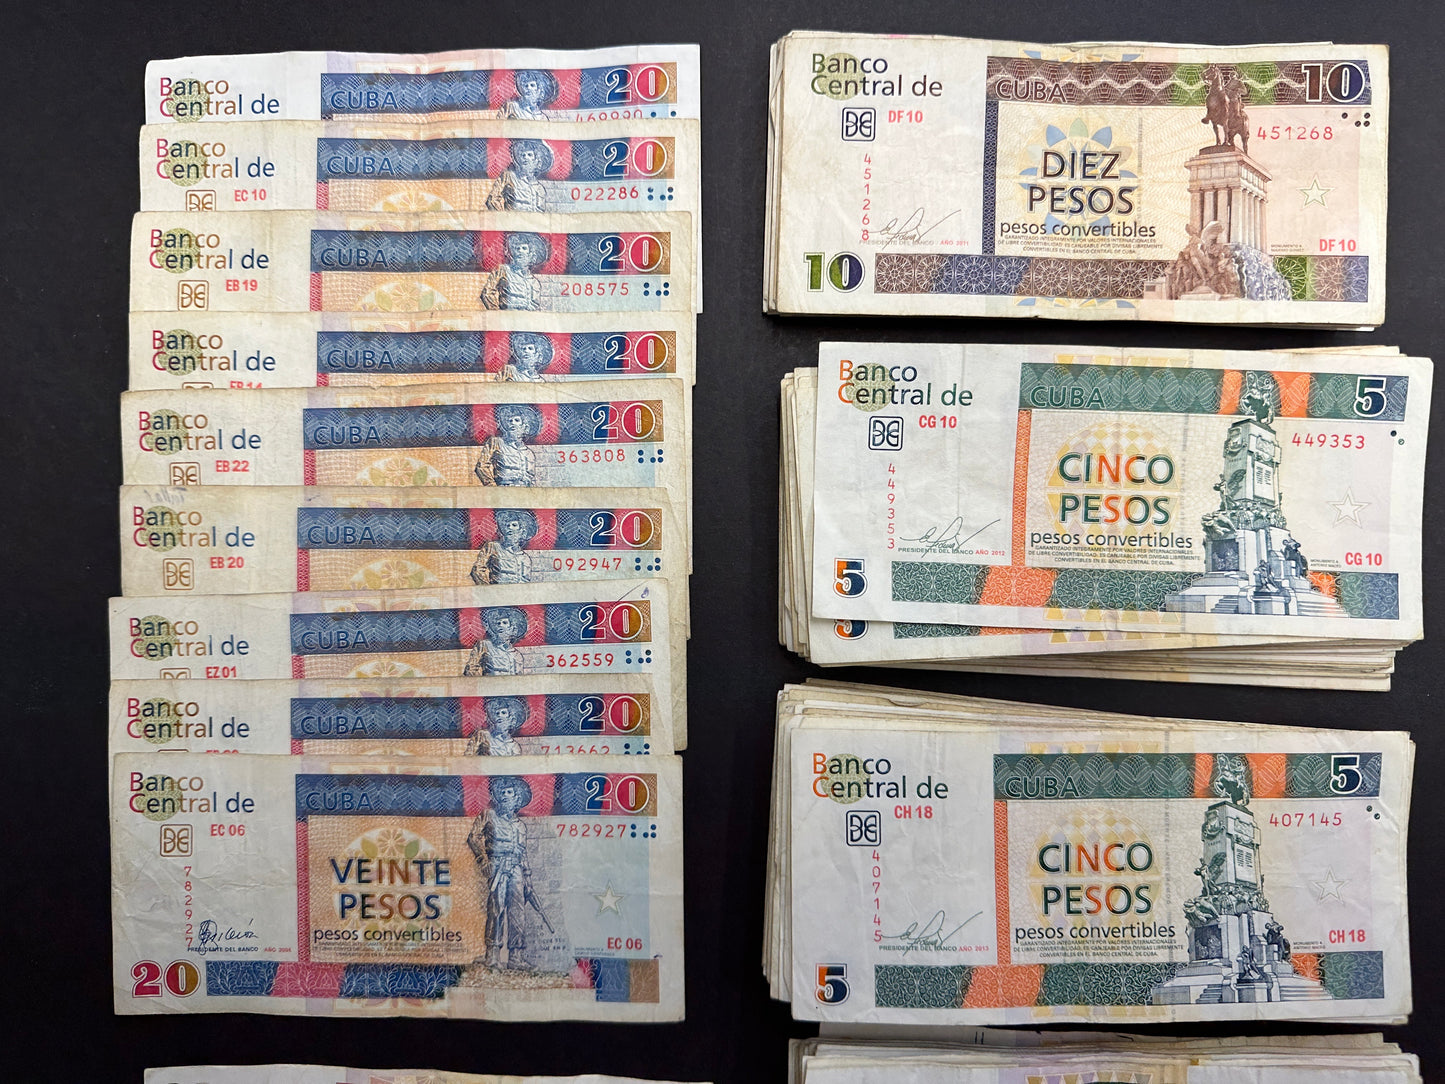 1100 Cuban Convertible Pesos (CUC) - Collectable banknotes - FREE SHIPPING